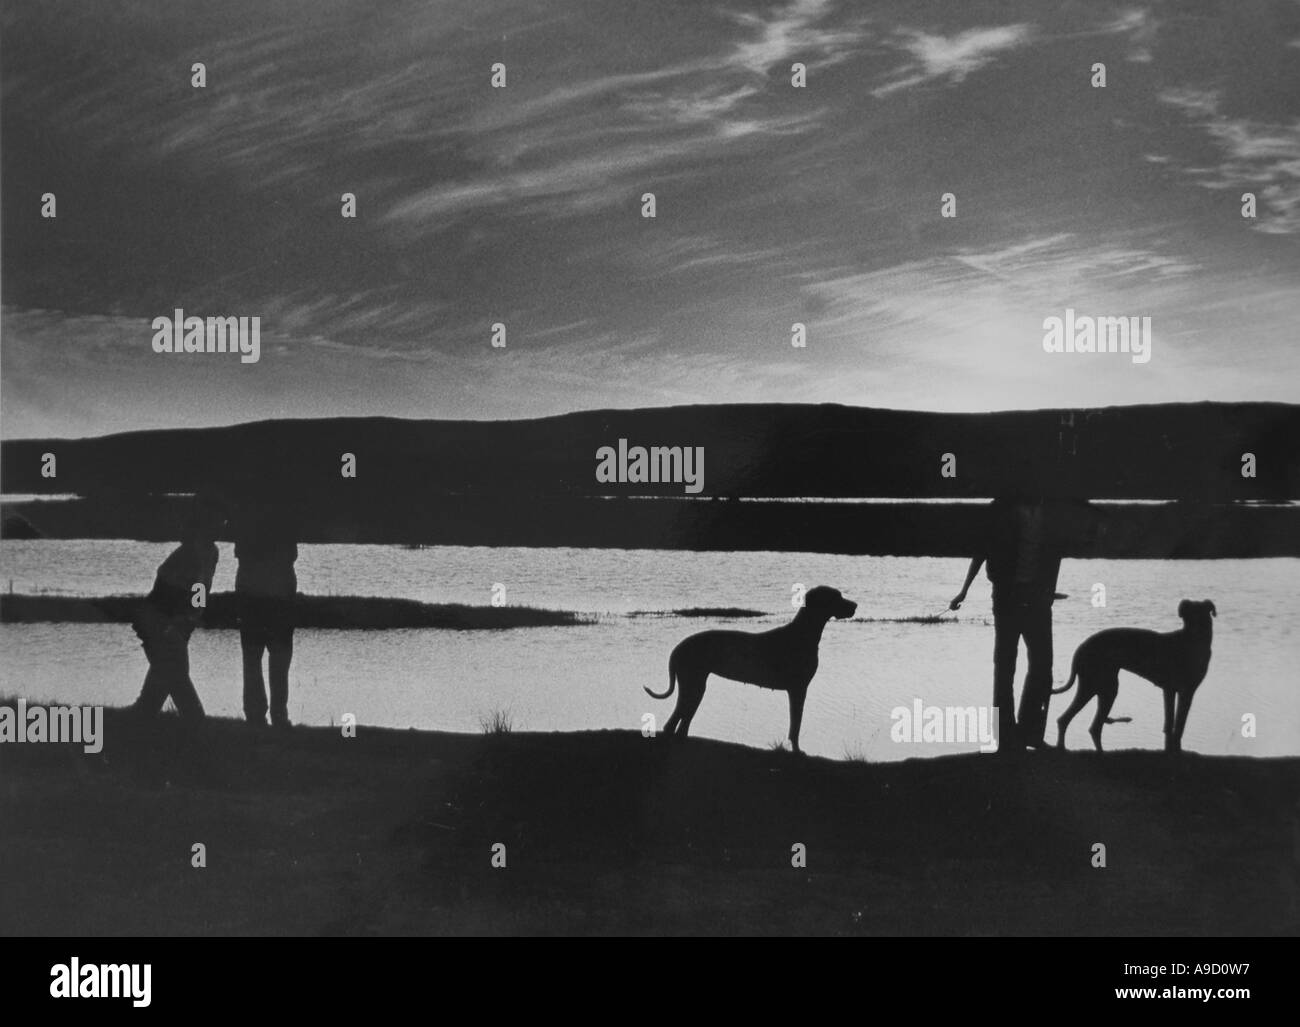 Silluette romantique en noir et blanc de chiens -great danes- avec des personnes à bord d'un lac près de Corofin - Co Clare- ouest de l'Irlande Banque D'Images